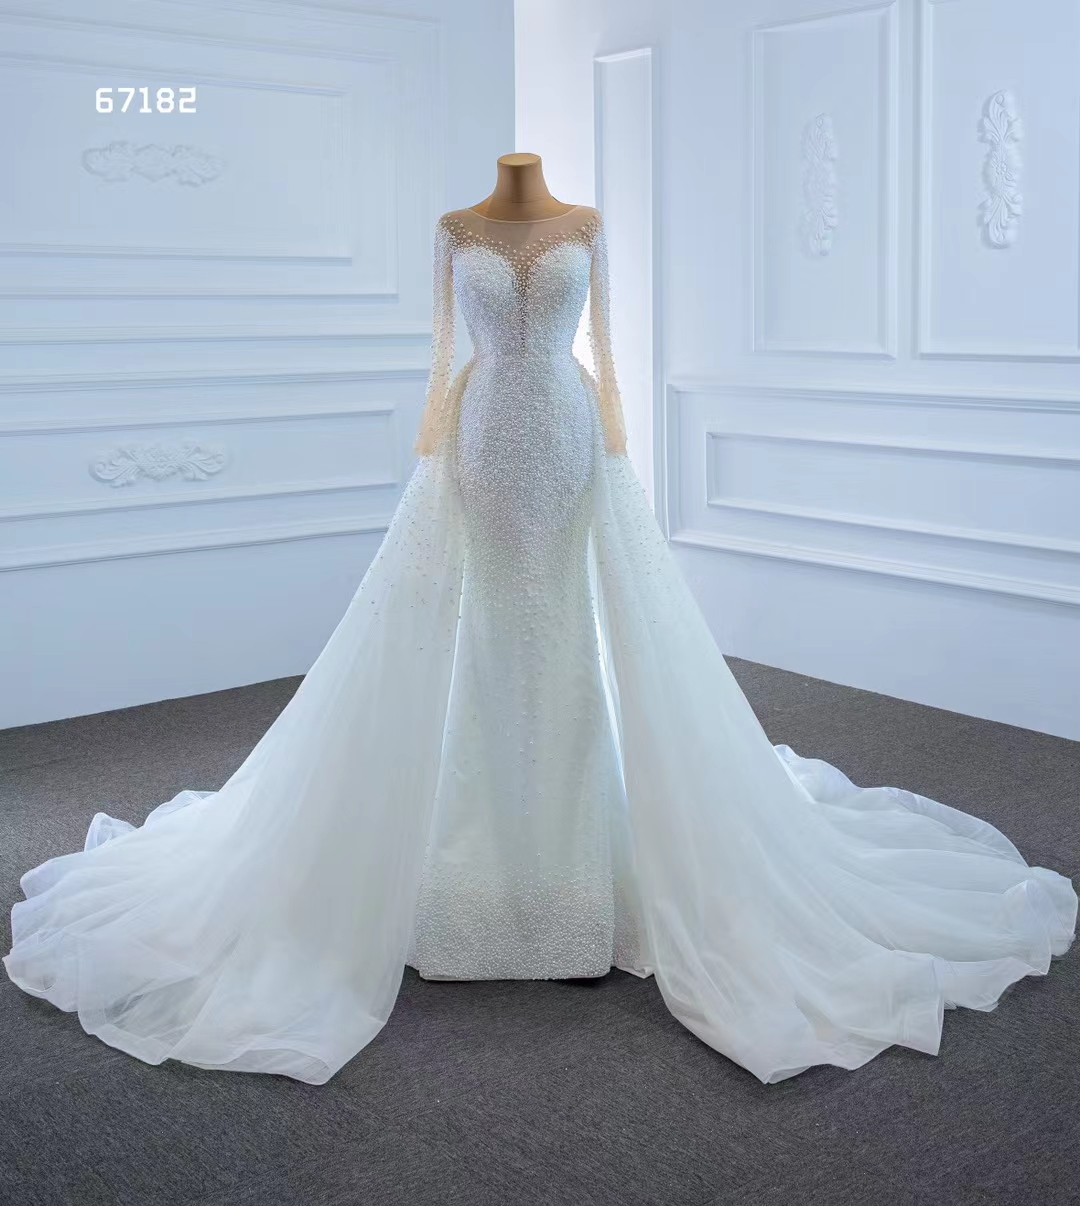 Suknia ślubna syreny księżniczka Kryształowa sukienka z długim rękawem szata elegancka ukochana SM67182